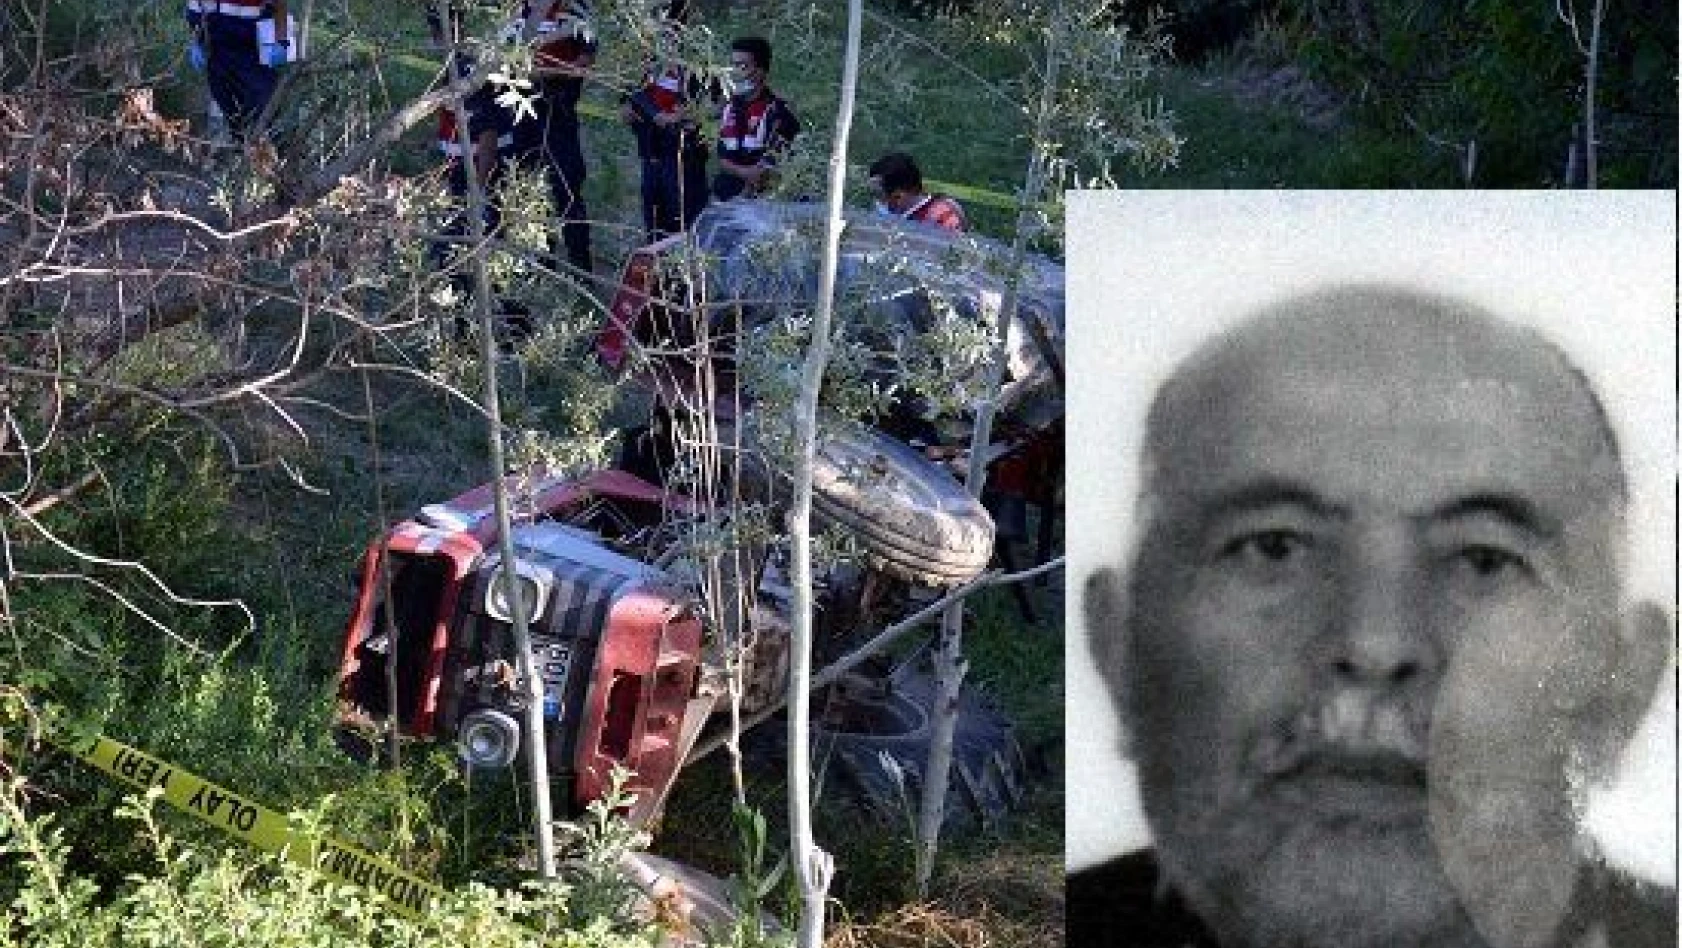 Devrilen traktörün sürücüsü öldü